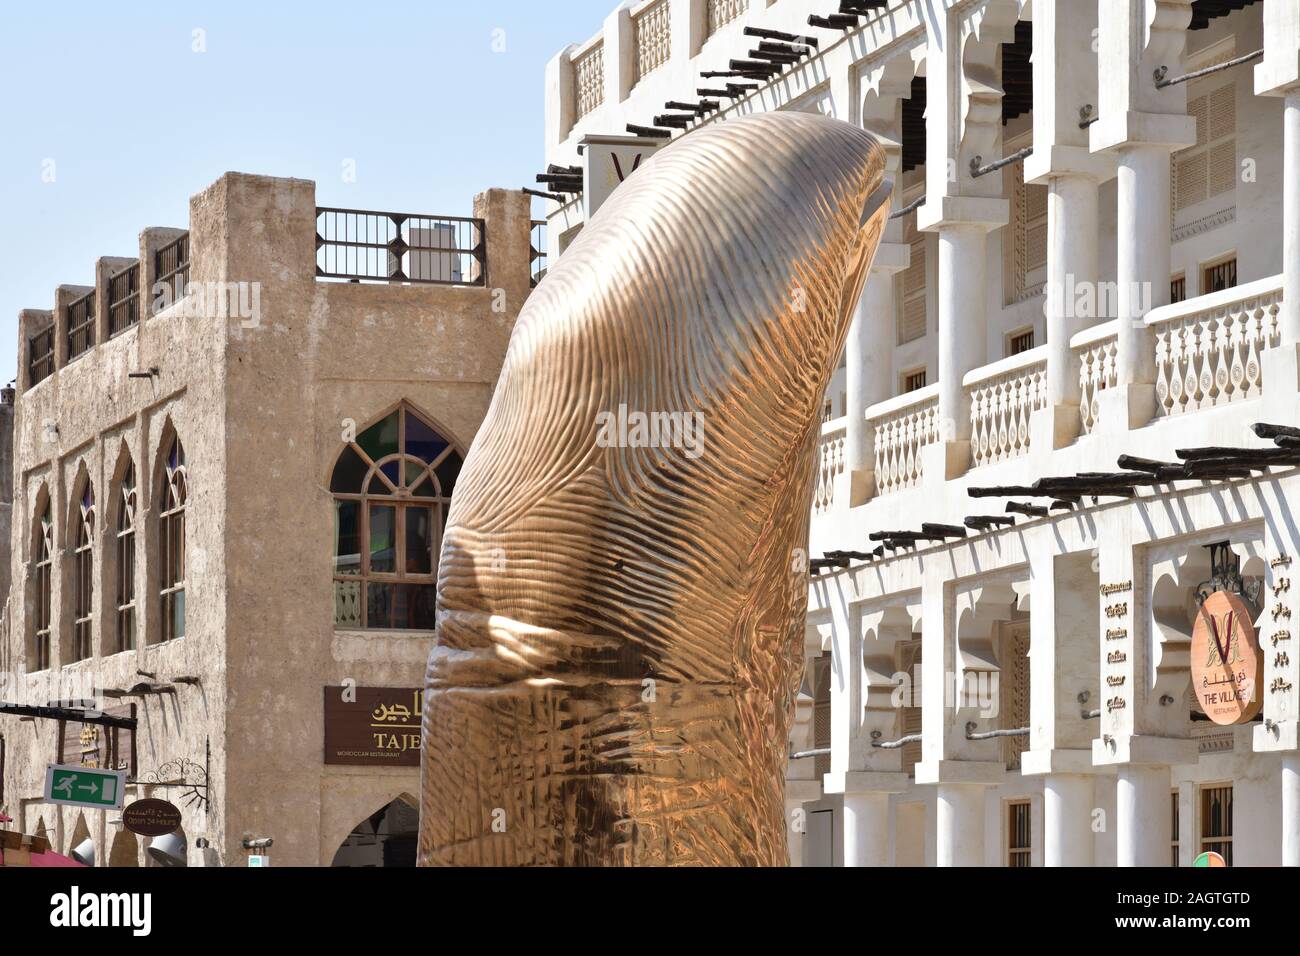 Doha, Qatar - novembre 21. 2019. Le pouce est une sculpture en forme de pouce géant, pièce d'art de l'artiste français renommé Cesar Baldaccini Banque D'Images